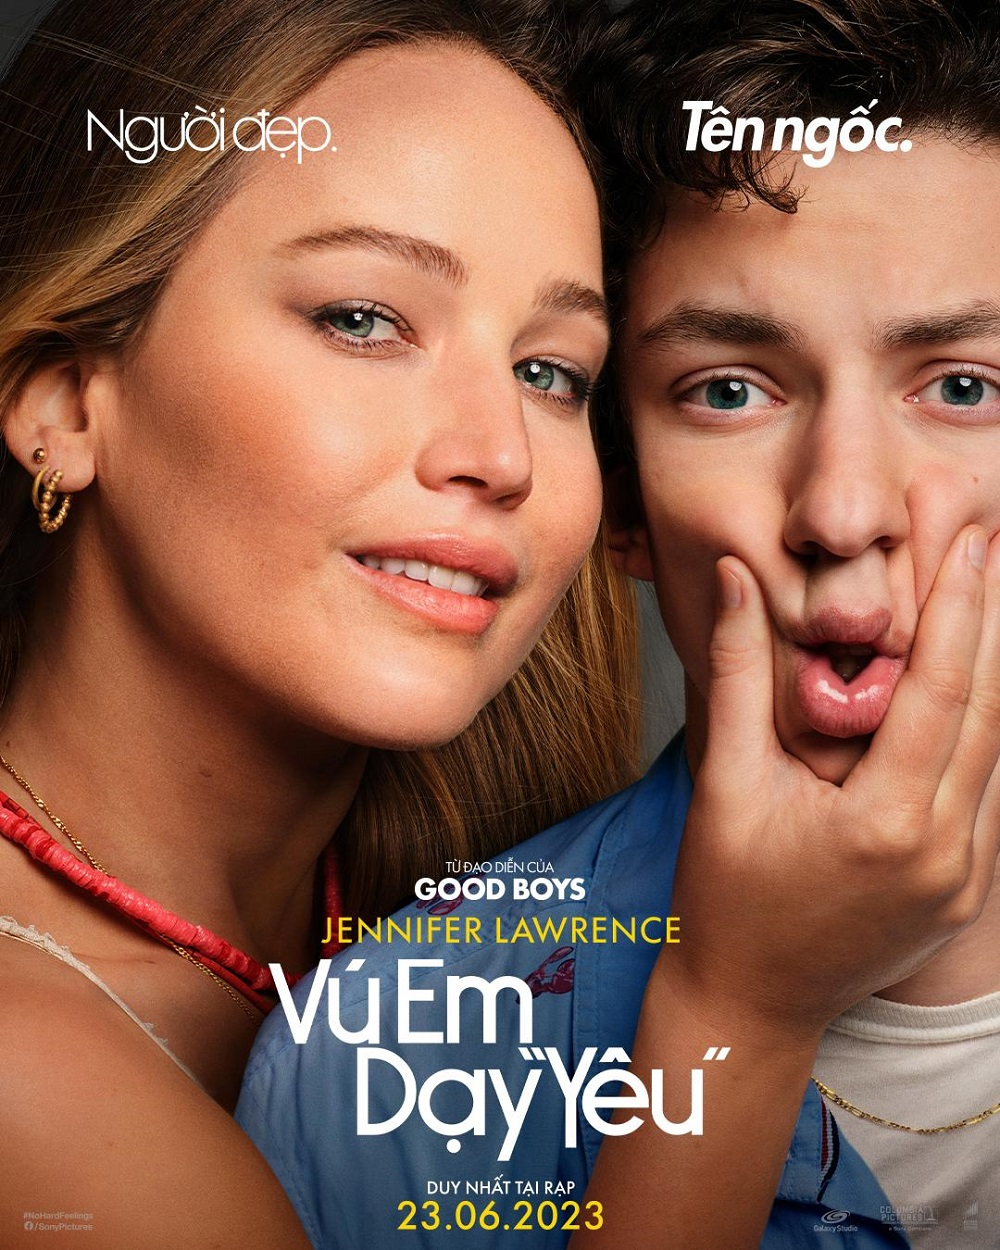 Jennifer Lawrence duyên dáng trong Vú Em Dạy 'Yêu. Ảnh sưu tầm